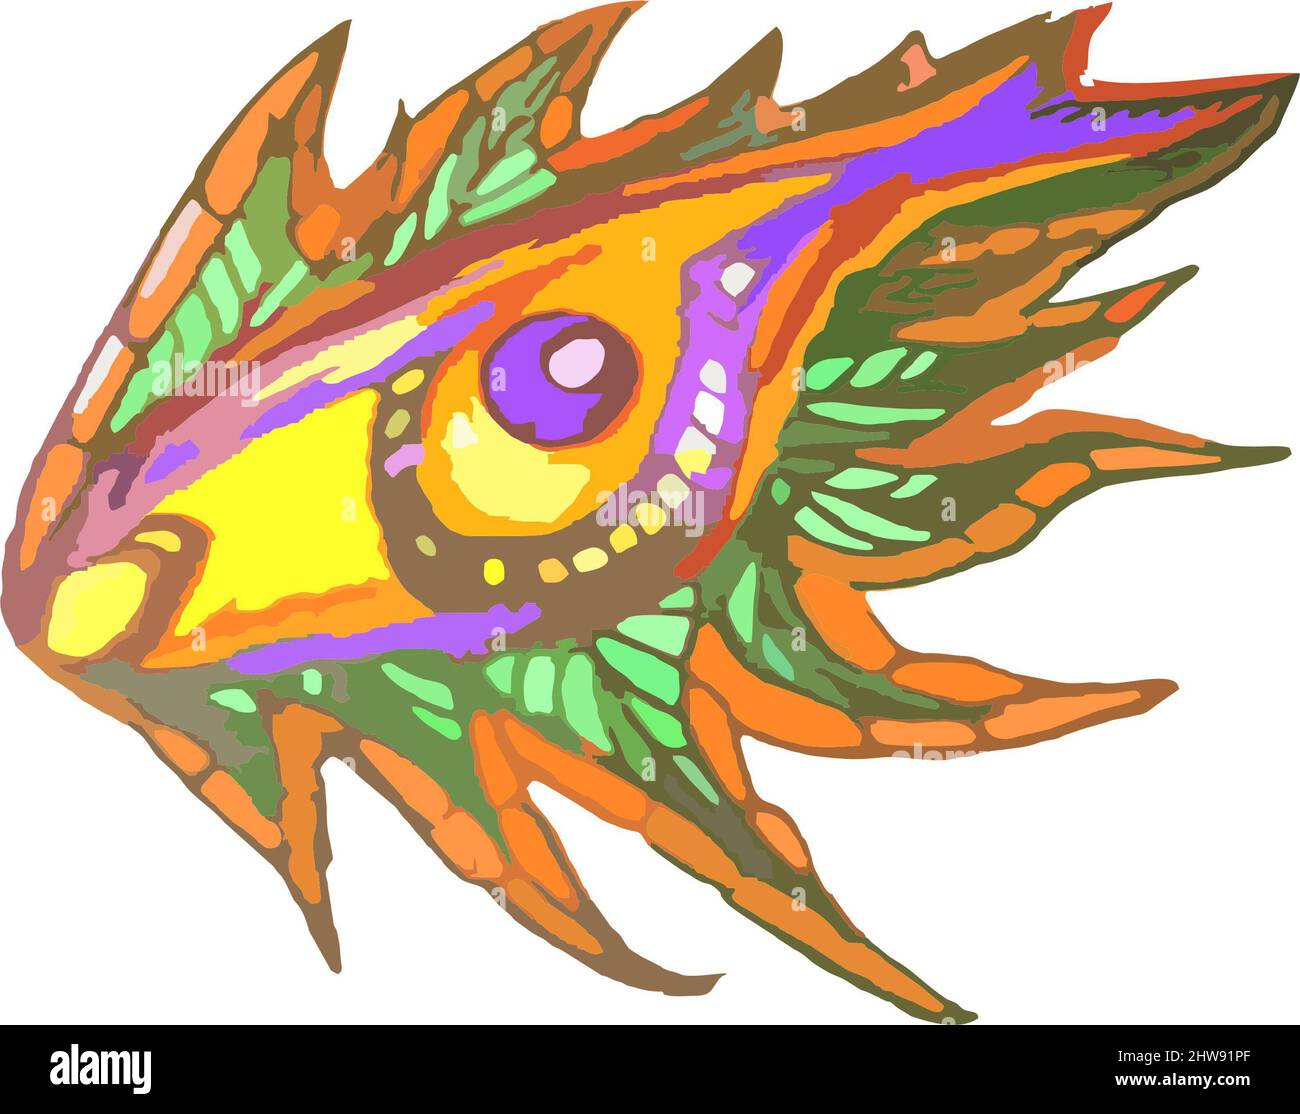 Symbole d'oeil coloré inhabituel sous forme de poisson sur blanc. Grunge yeux ondulés comme un dragon pour les textiles, les affiches, les solutions environnementales ou intérieures, le papier peint Banque D'Images